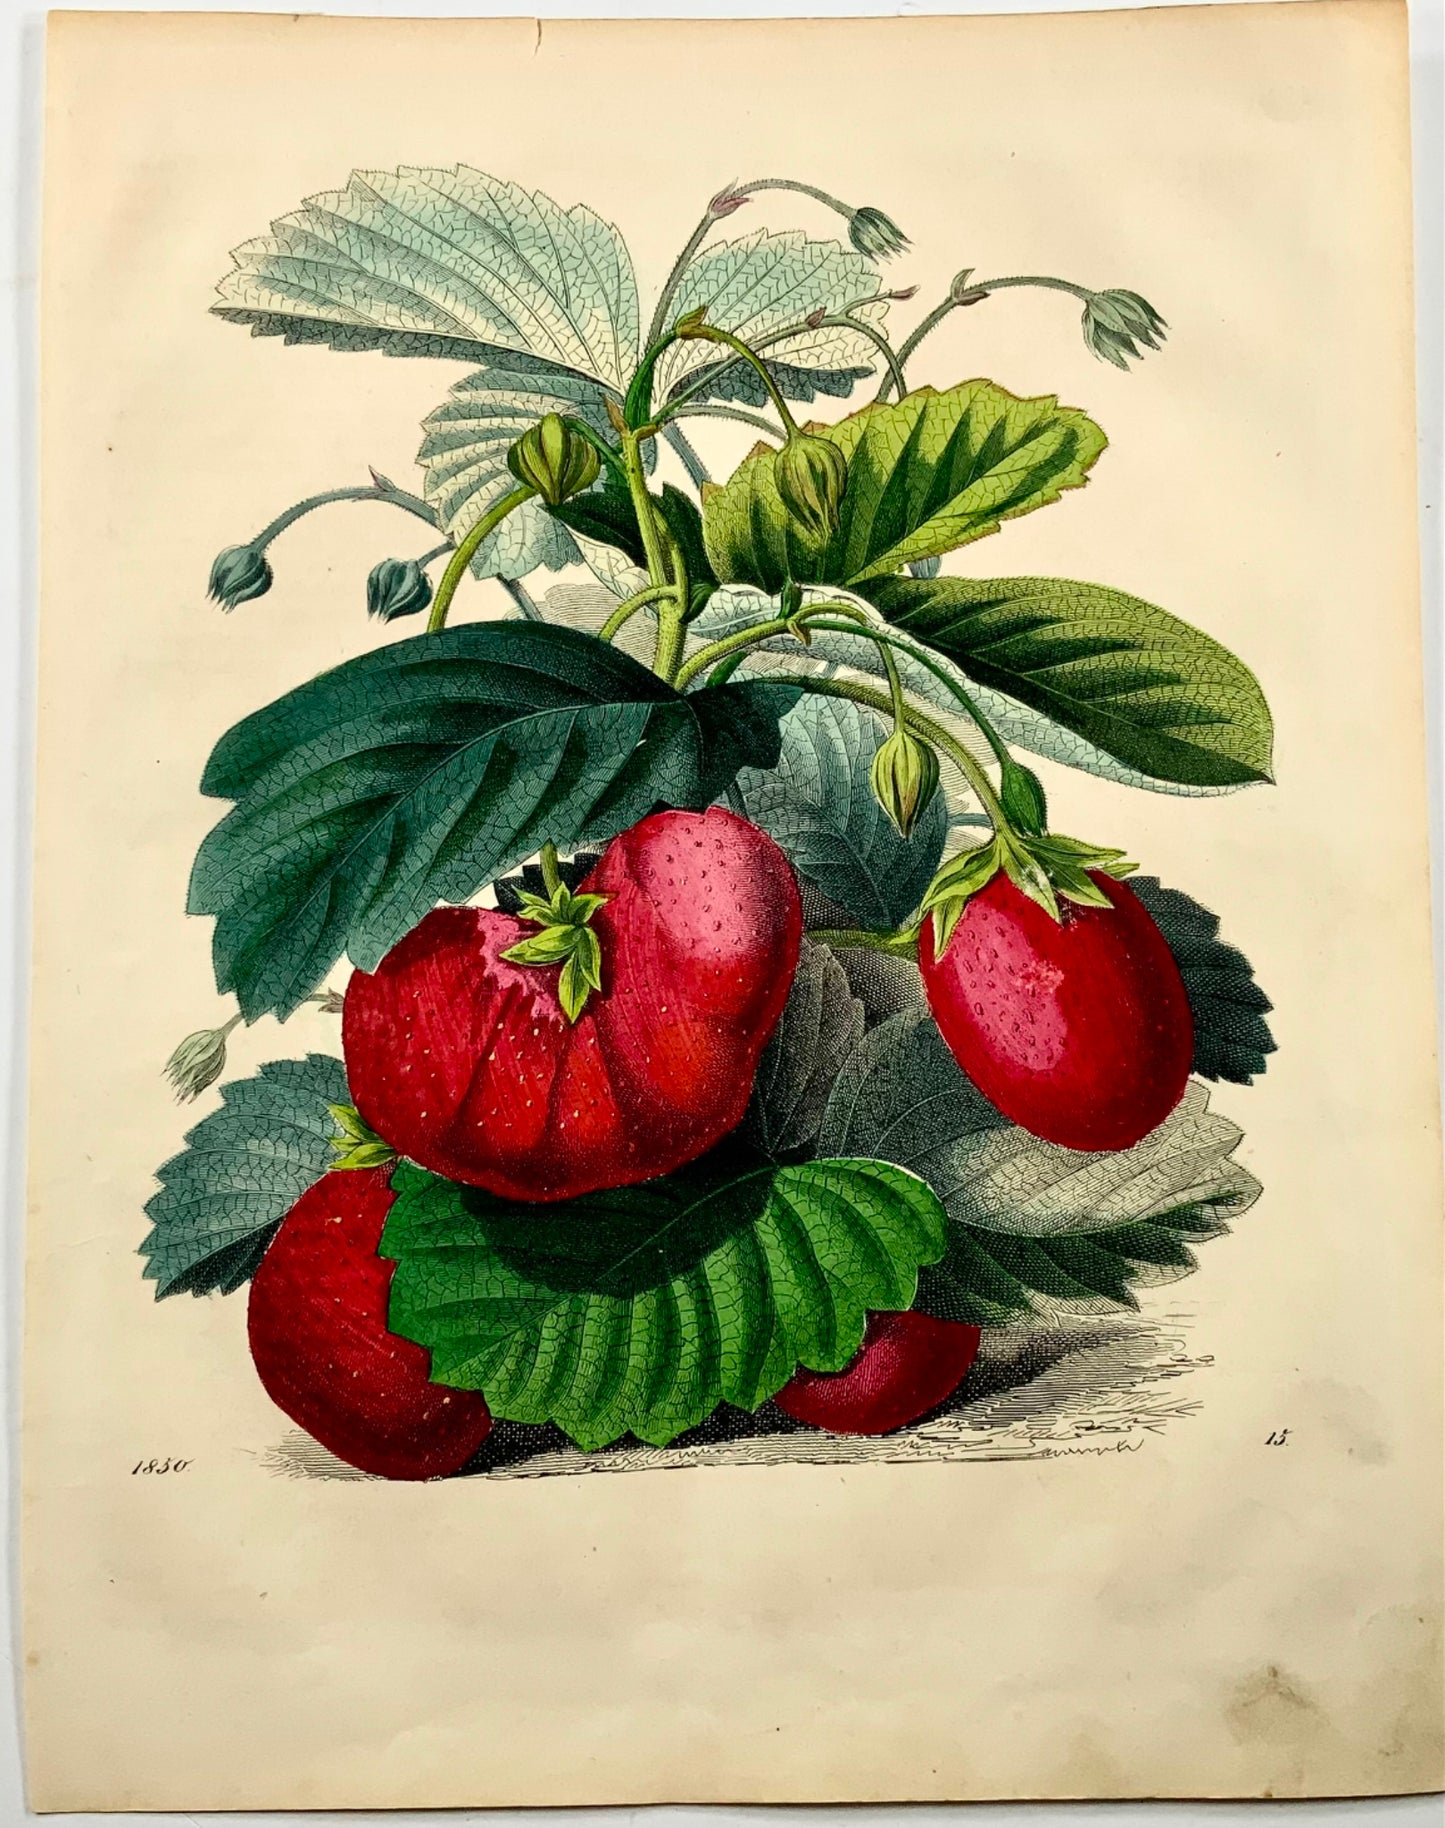 1851 Fragole, litografia 4to colorata a mano, frutta 